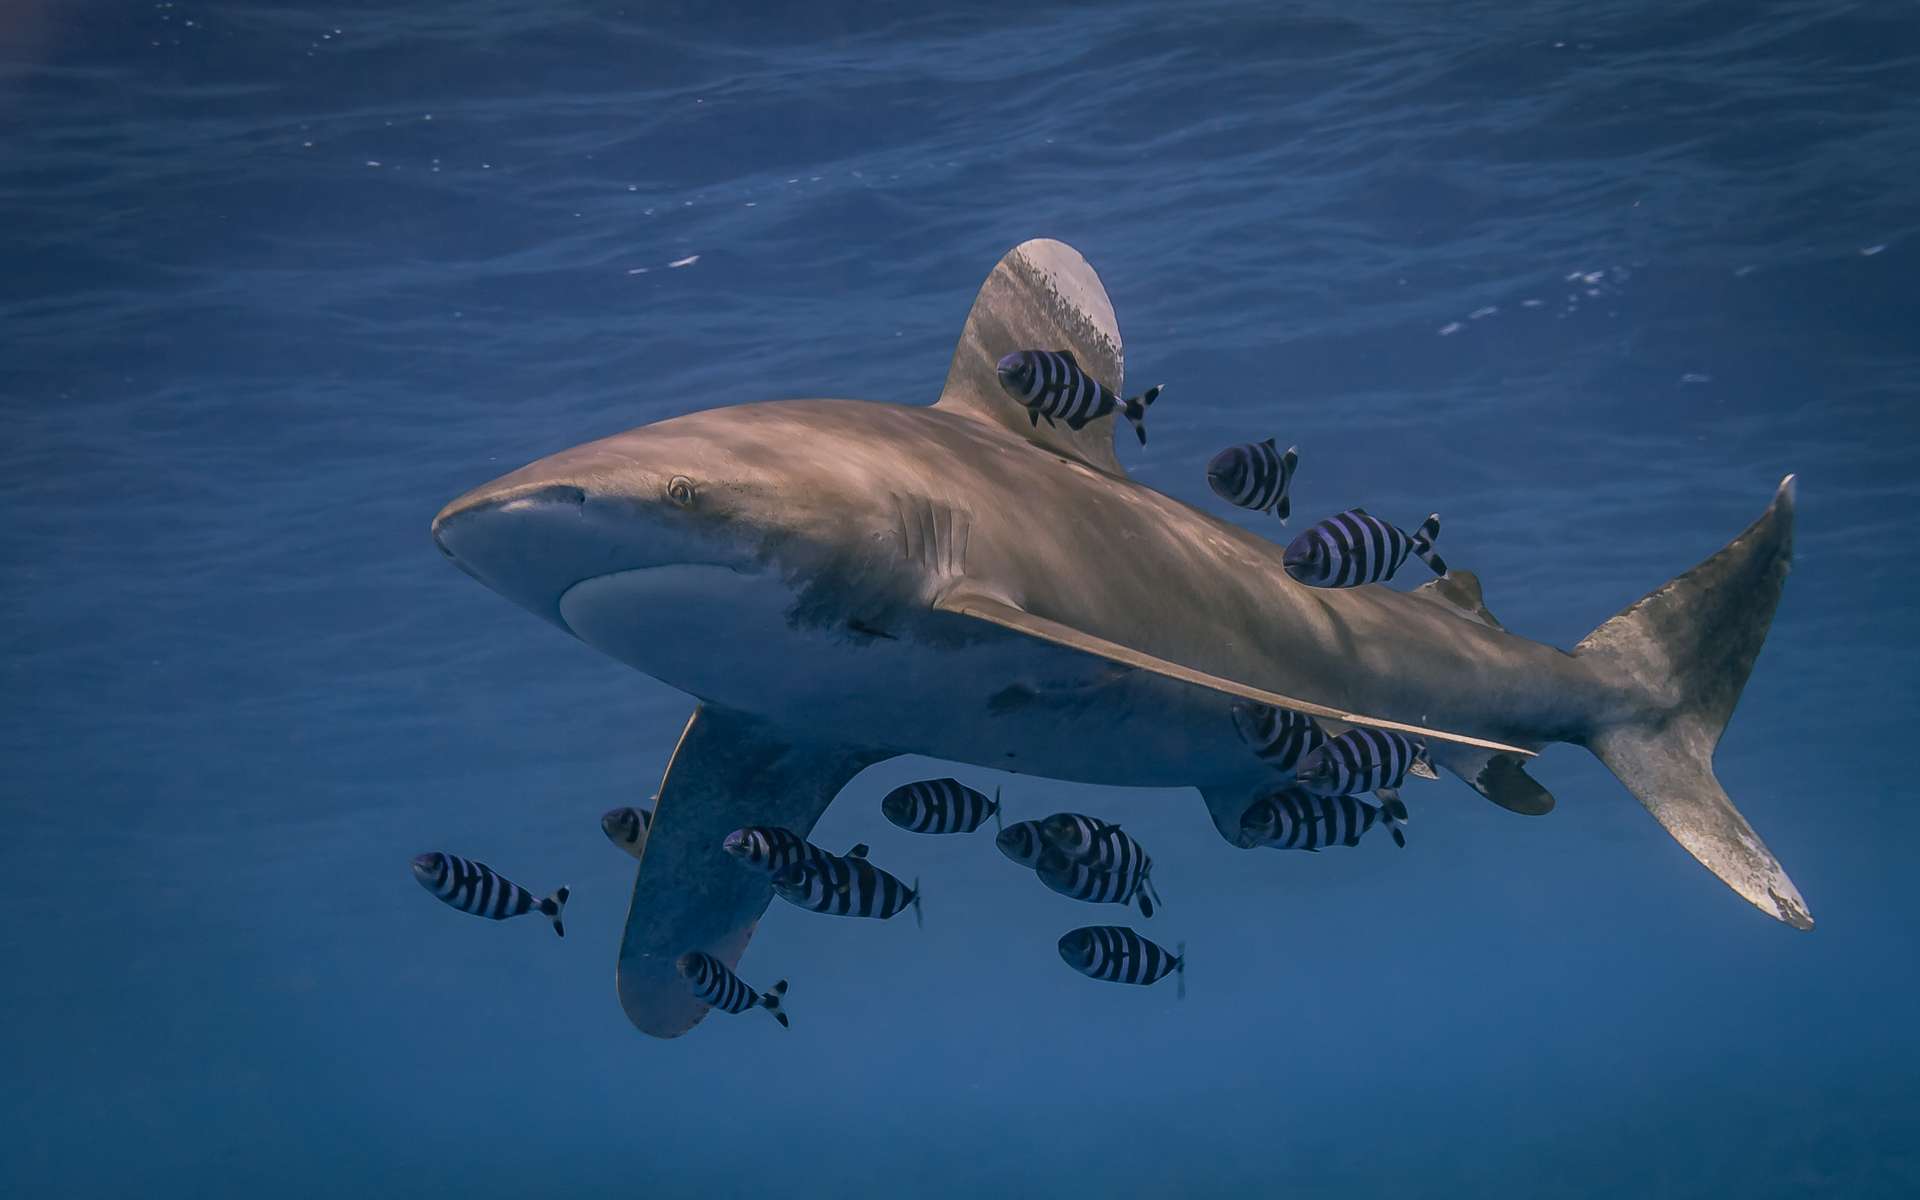 Les grands prédateurs comme les requins ont plus de mal à s'adapter au réchauffement climatique que les petites espèces. © Stephan, Adobe Stock